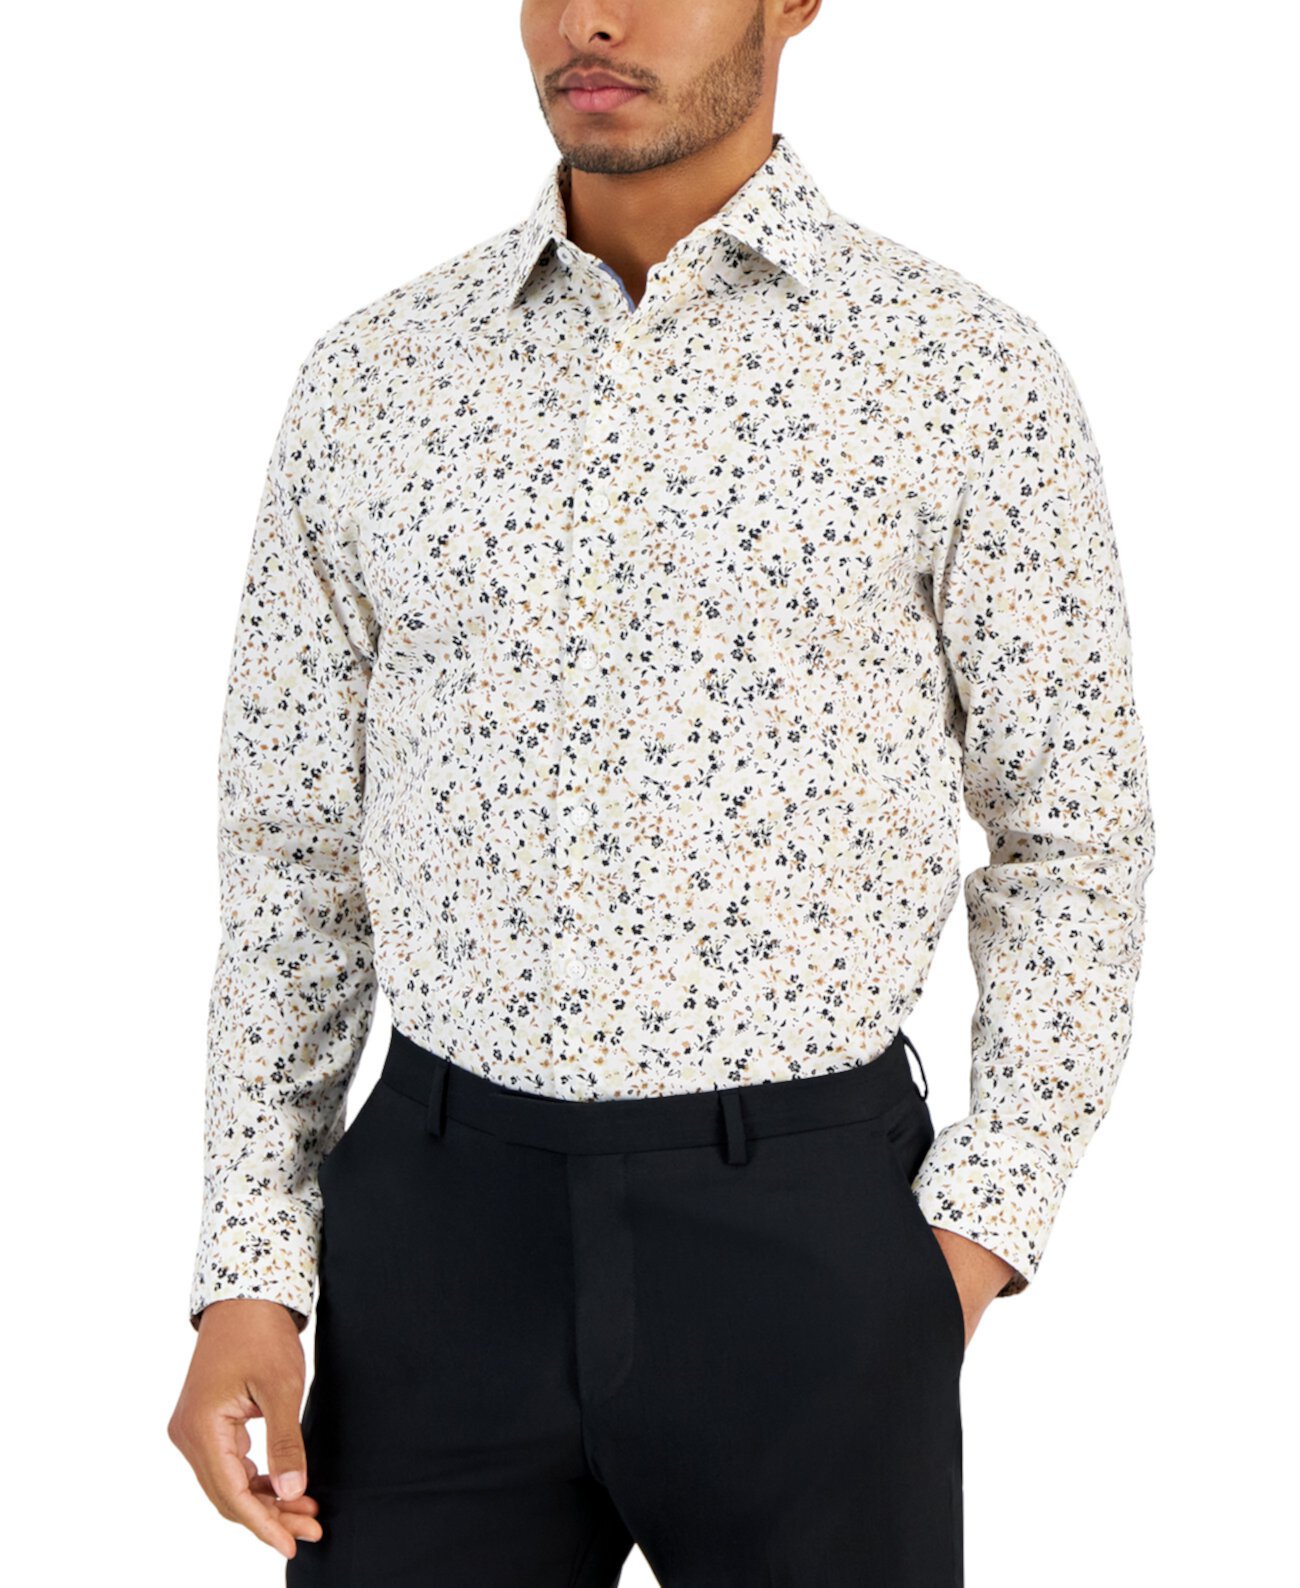 Мужская классическая рубашка узкого кроя с цветочным принтом, созданная для Macy's Bar III